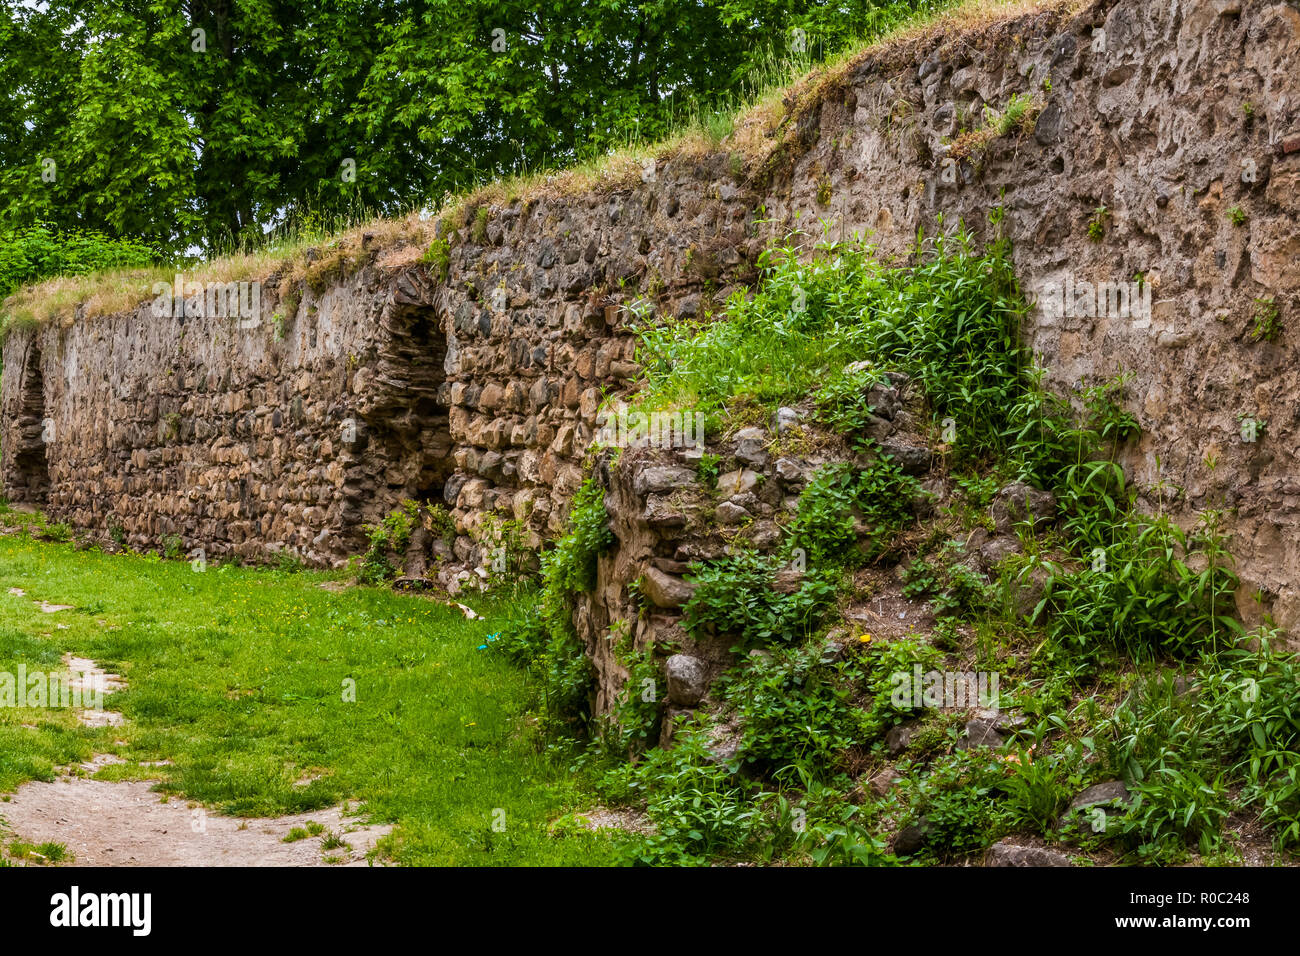 Iznik, Turkey, May 10, 2012: 2000 year-old historic city walls. Stock Photo